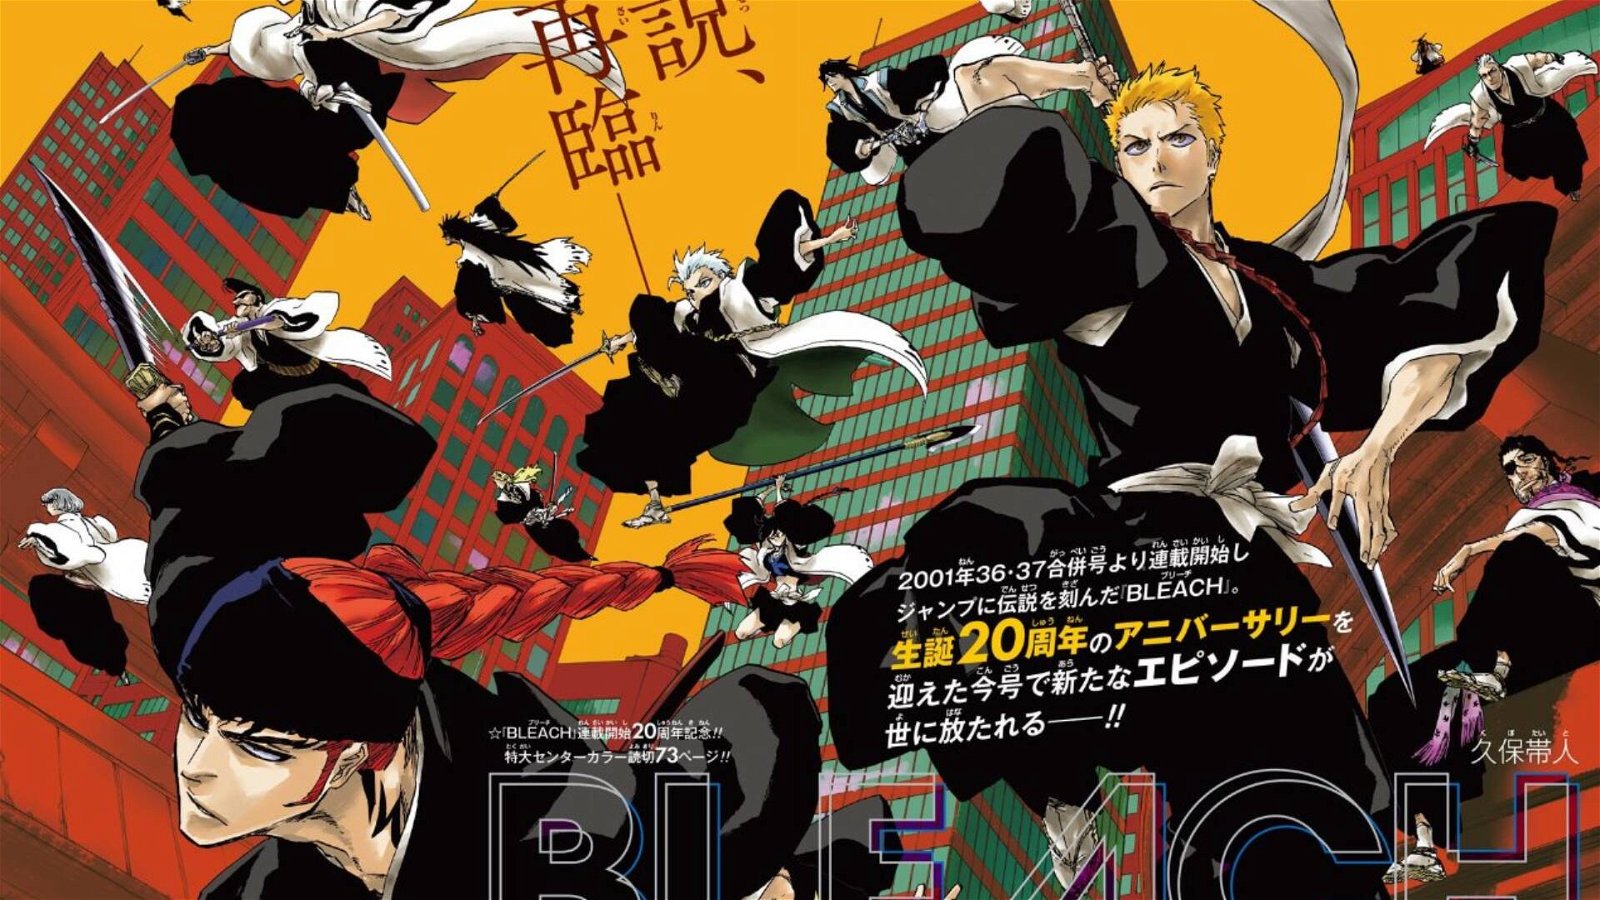 Immagine di Novità sull'anime di Bleach e il poster della mostra